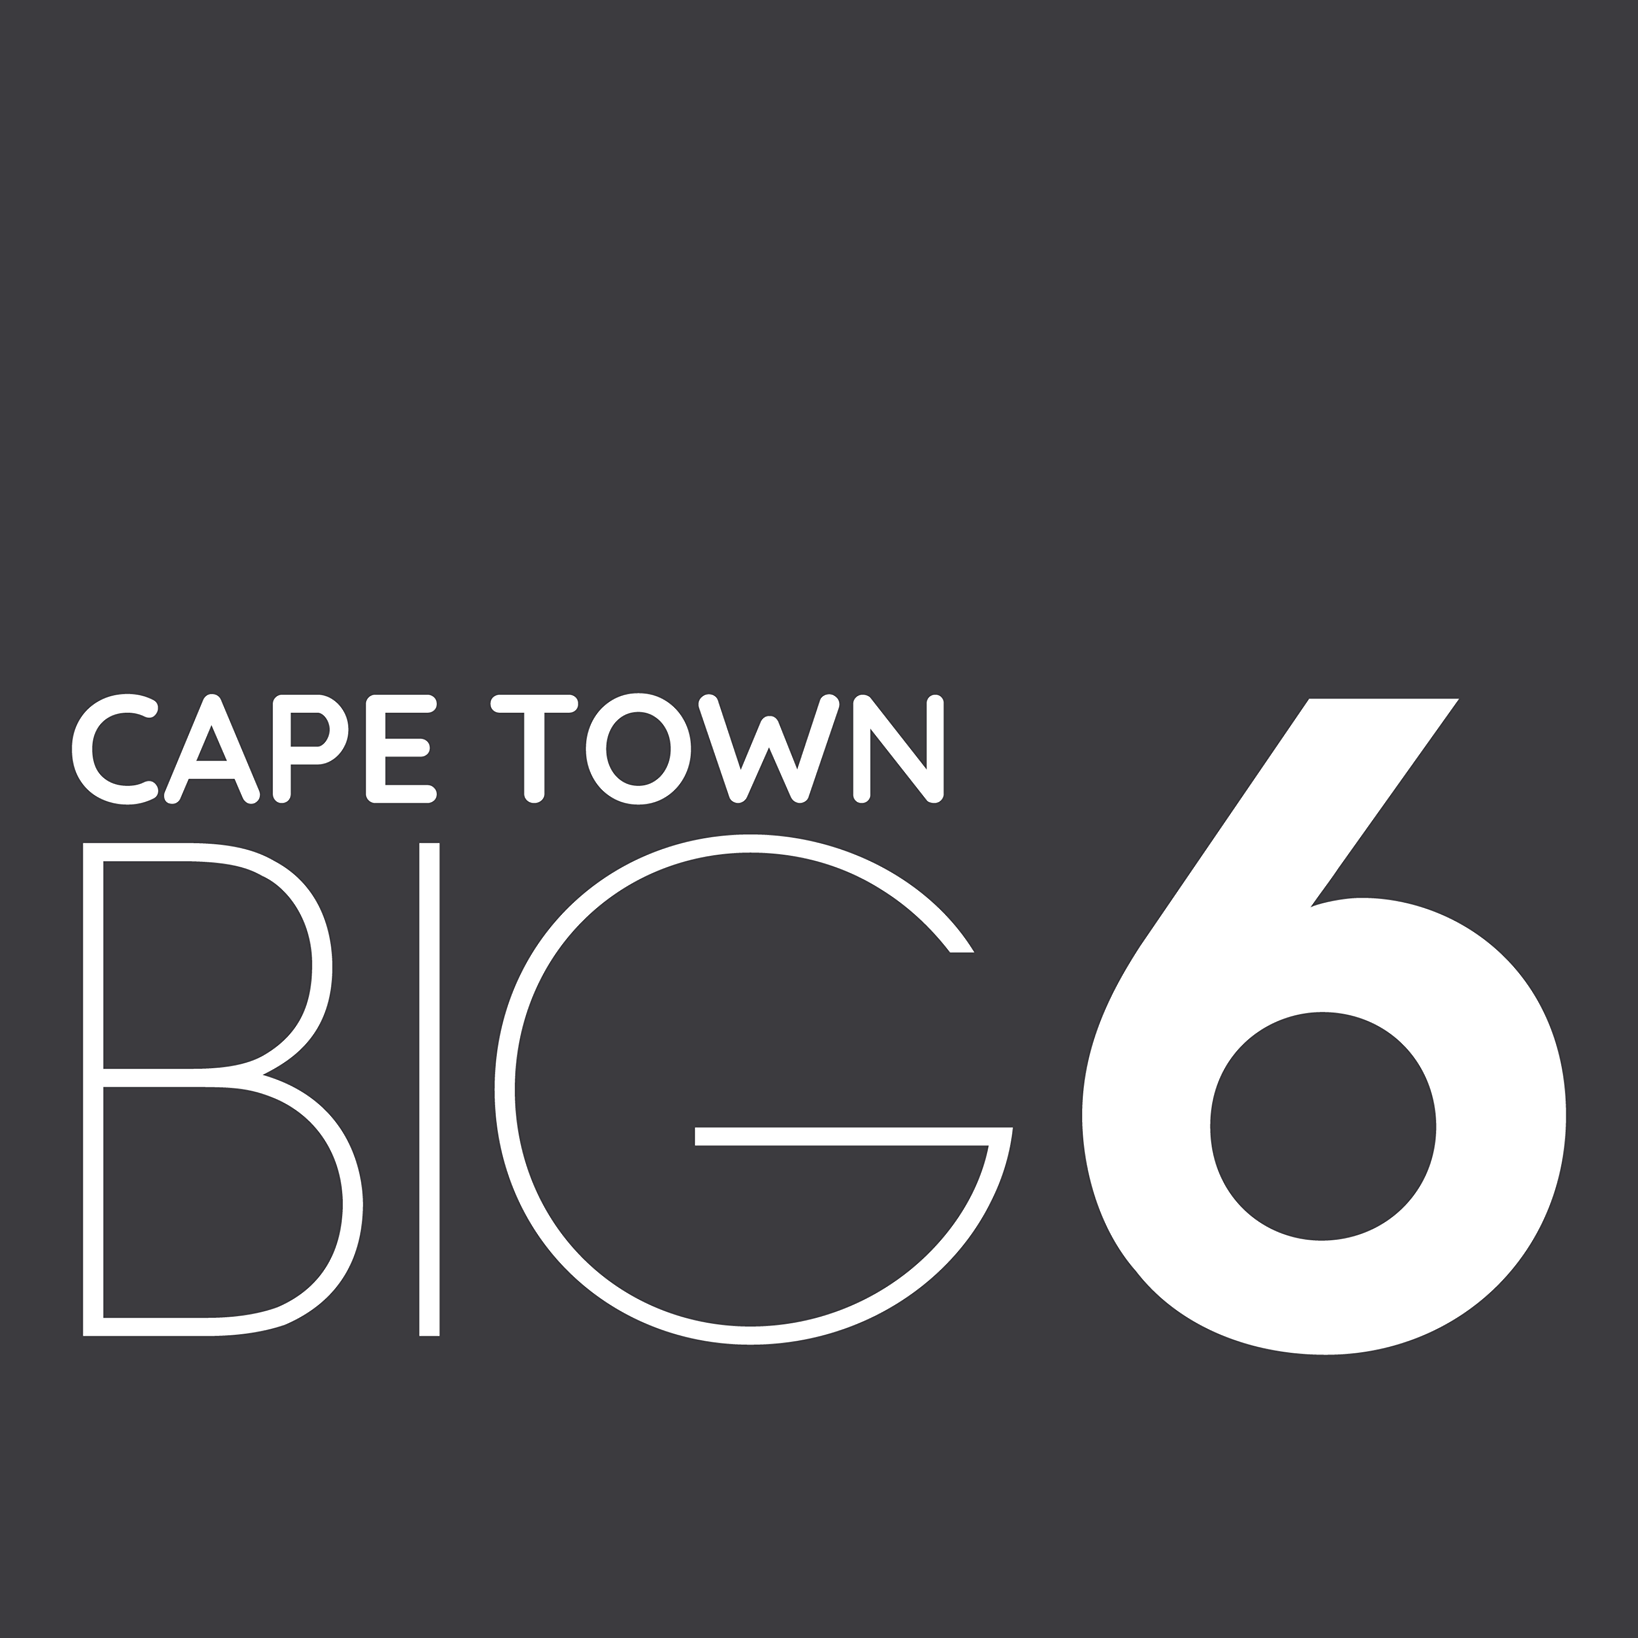 Cape Town Big 6